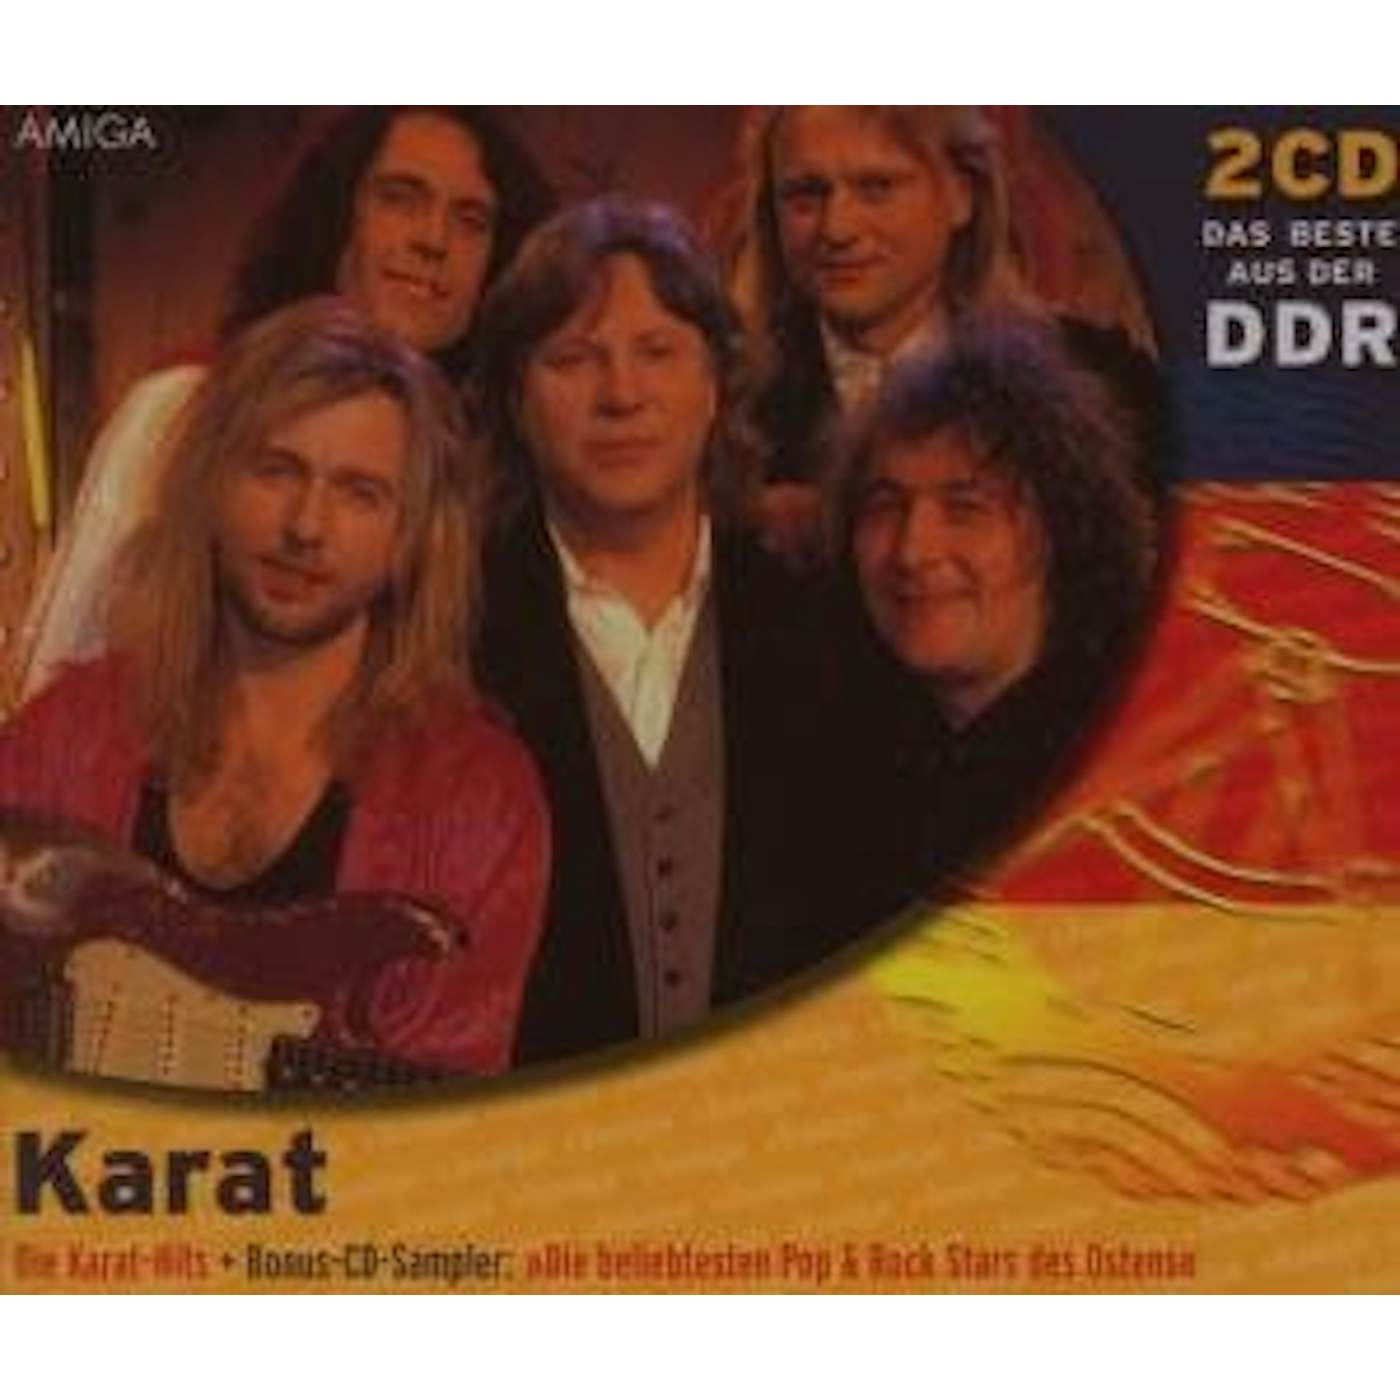 Karat DAS BESTE DER DDR CD